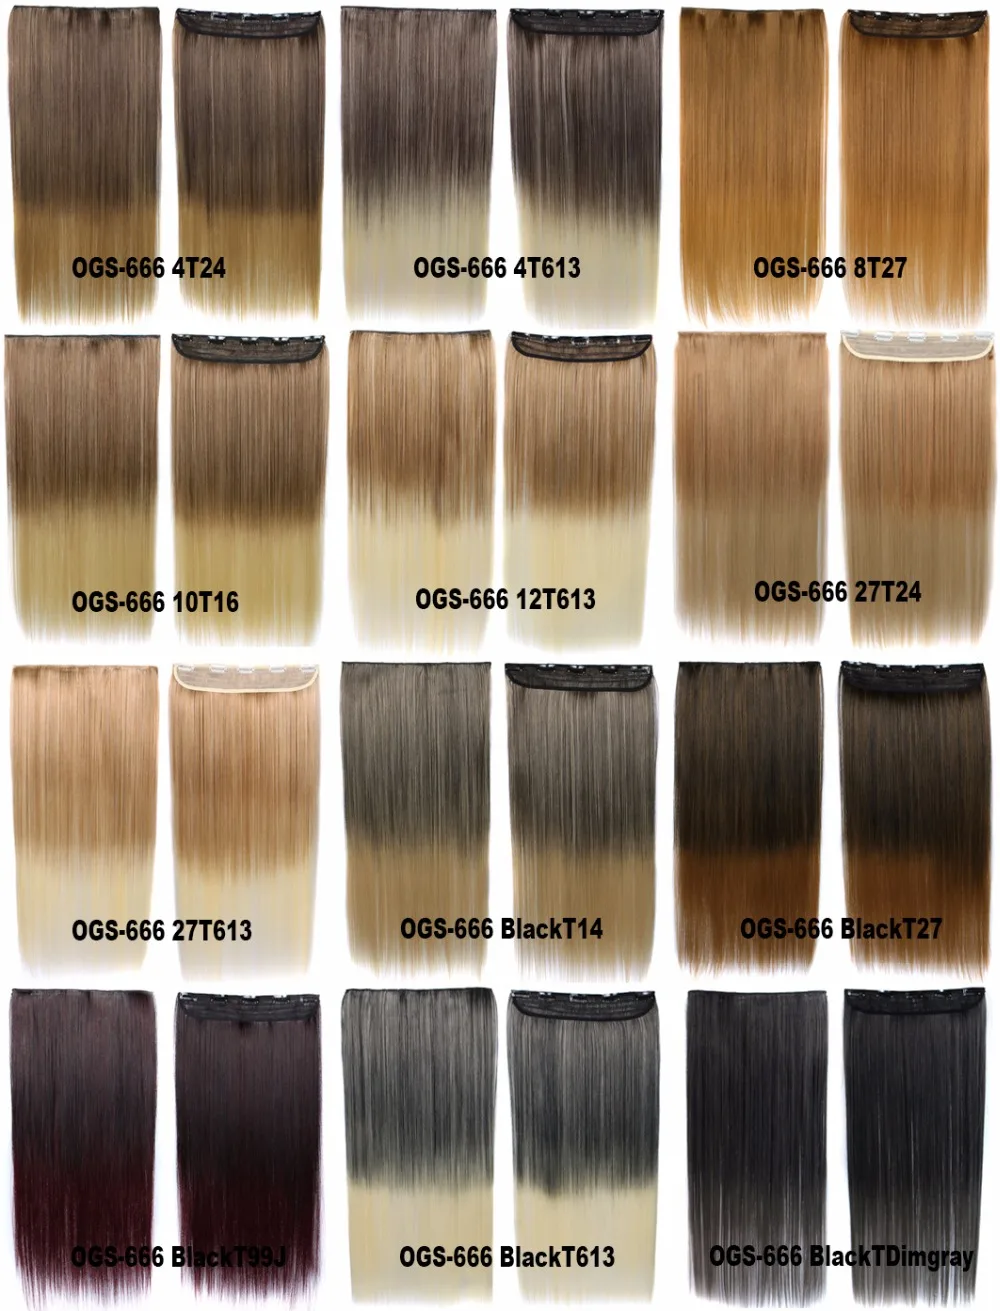 Girlshow 2" синтетические волосы для наращивания 5 зажимов в волосах шелковистые прямые длинные волосы доступны 24 цвета, 100 г/шт